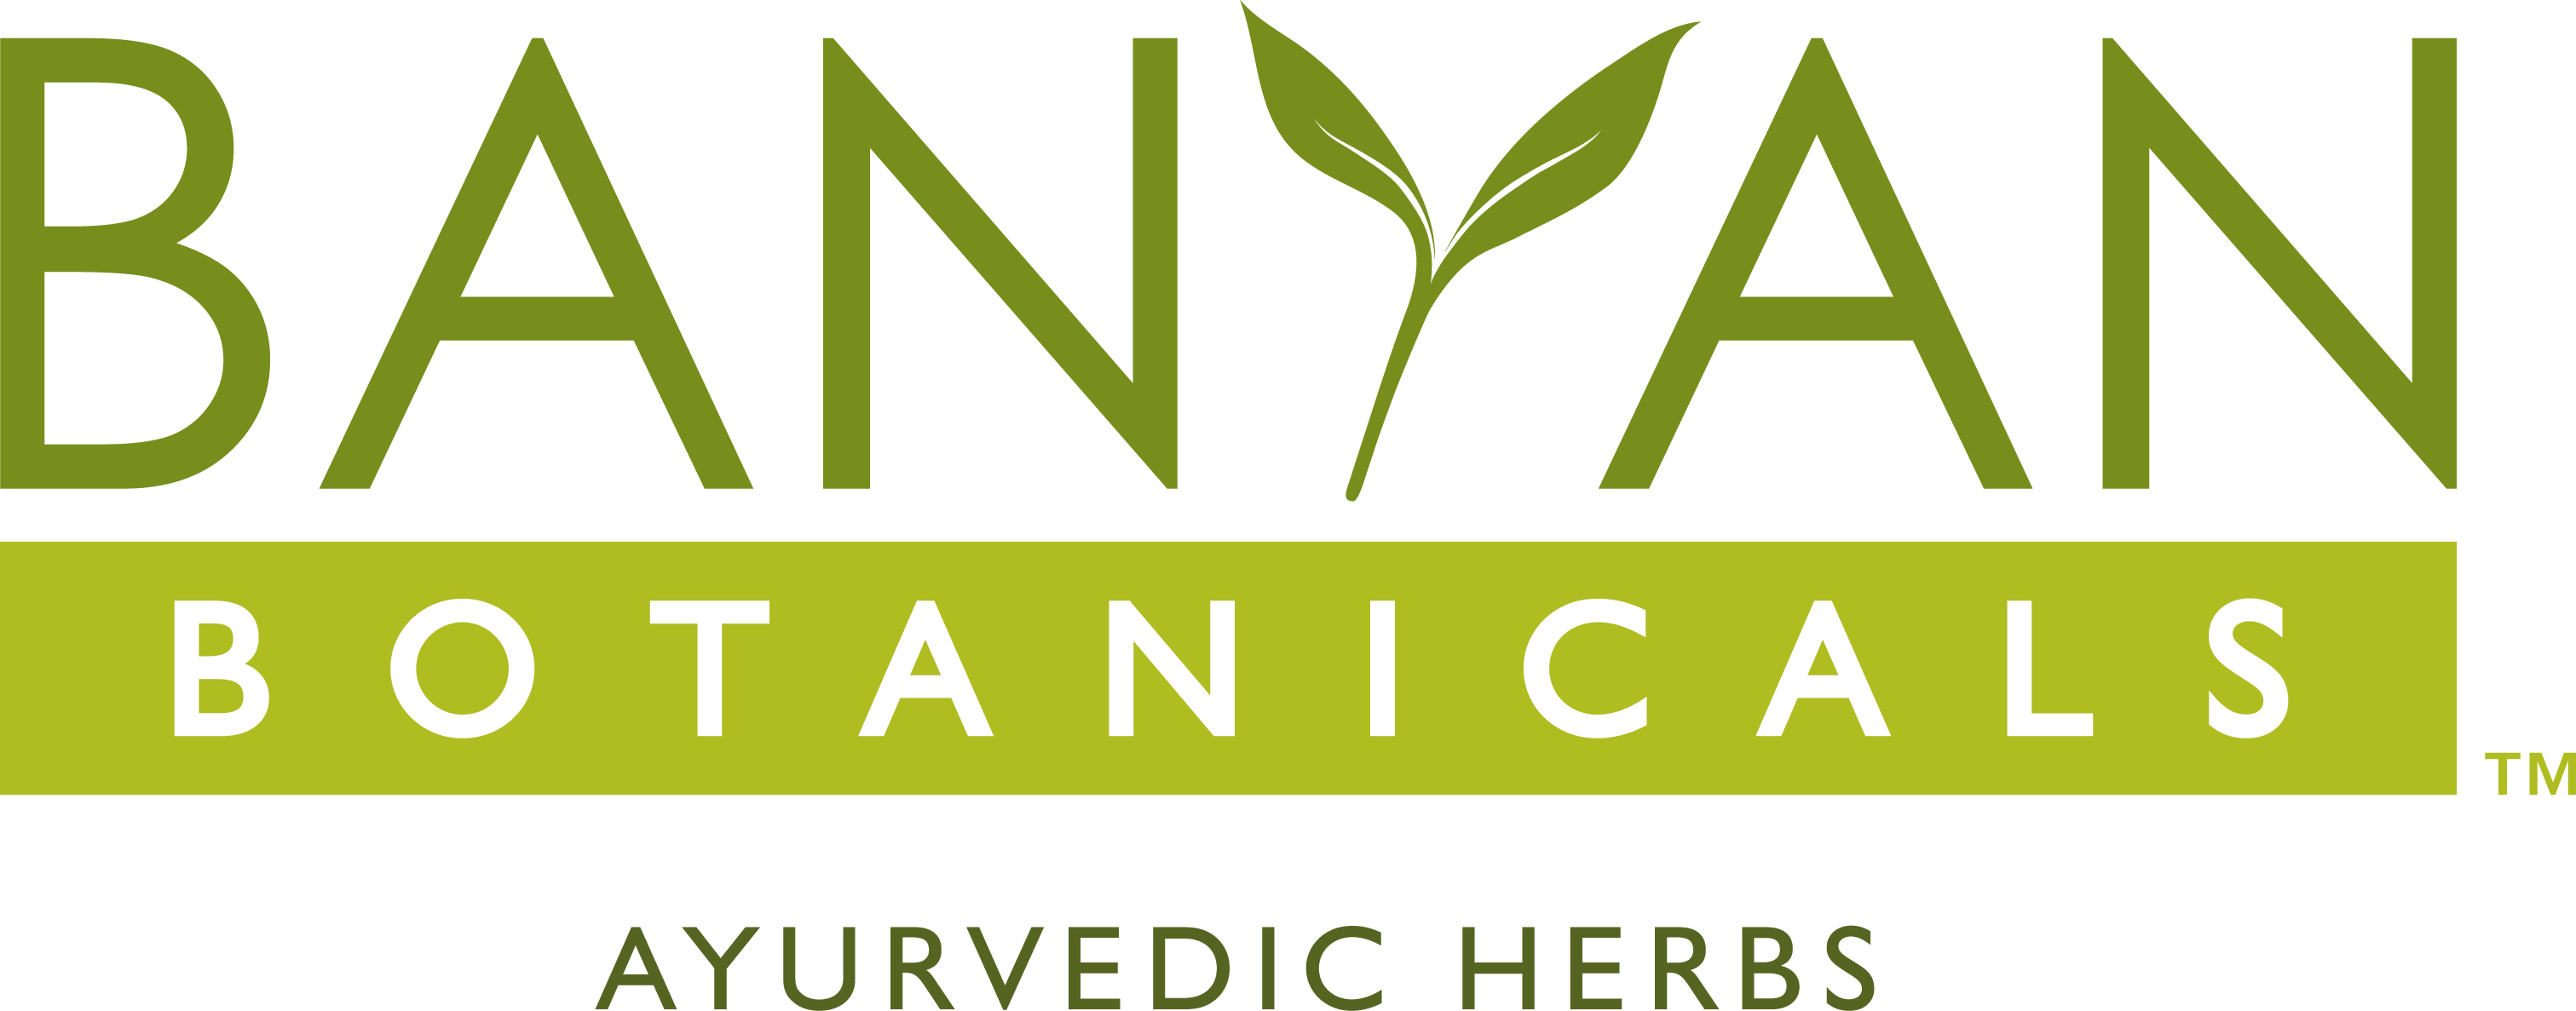 Banyan Botanicals logo